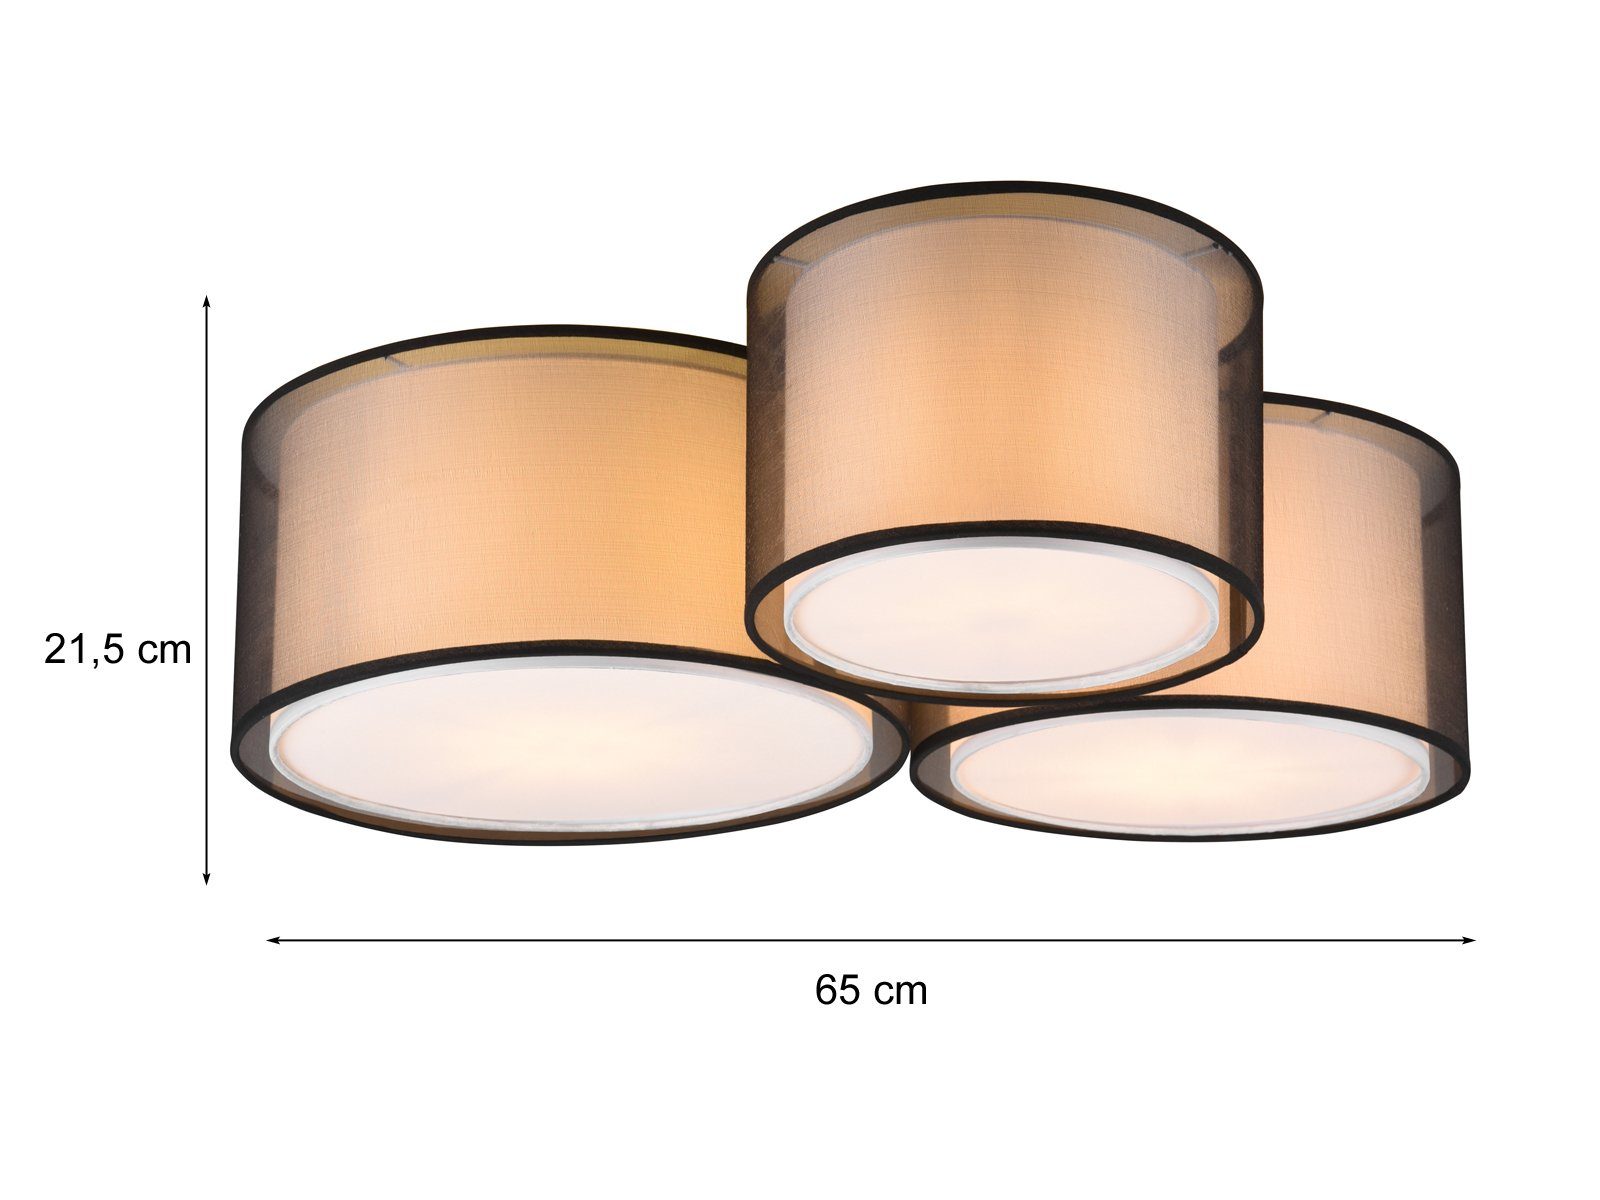 Stoff LED 3x LED mit für wechselbar, Warmweiß, 65cm Lampen-schirm Deckenleuchte, Treppenhaus Lampe Design-er meineWunschleuchte Groß-e